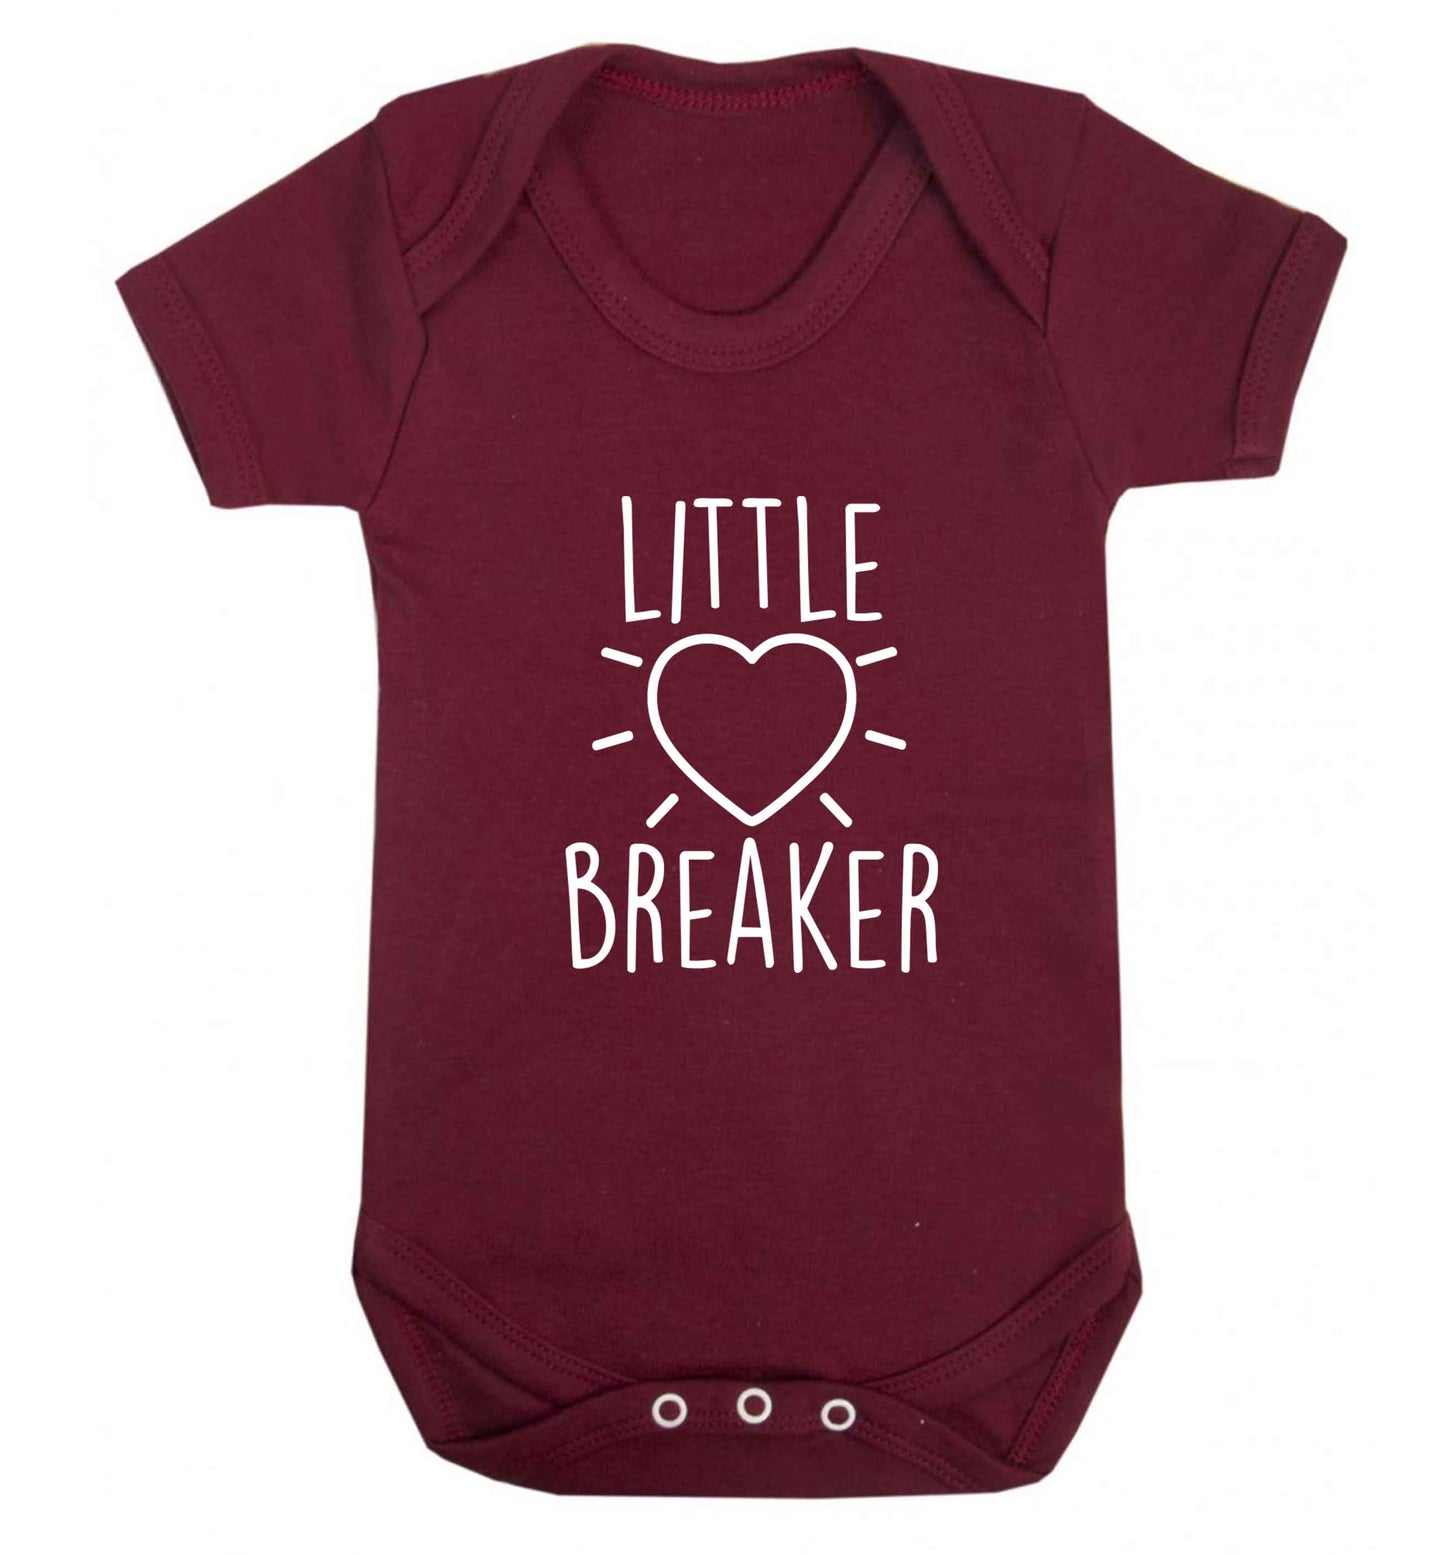 Little heartbreaker baby vest maroon 18-24 months